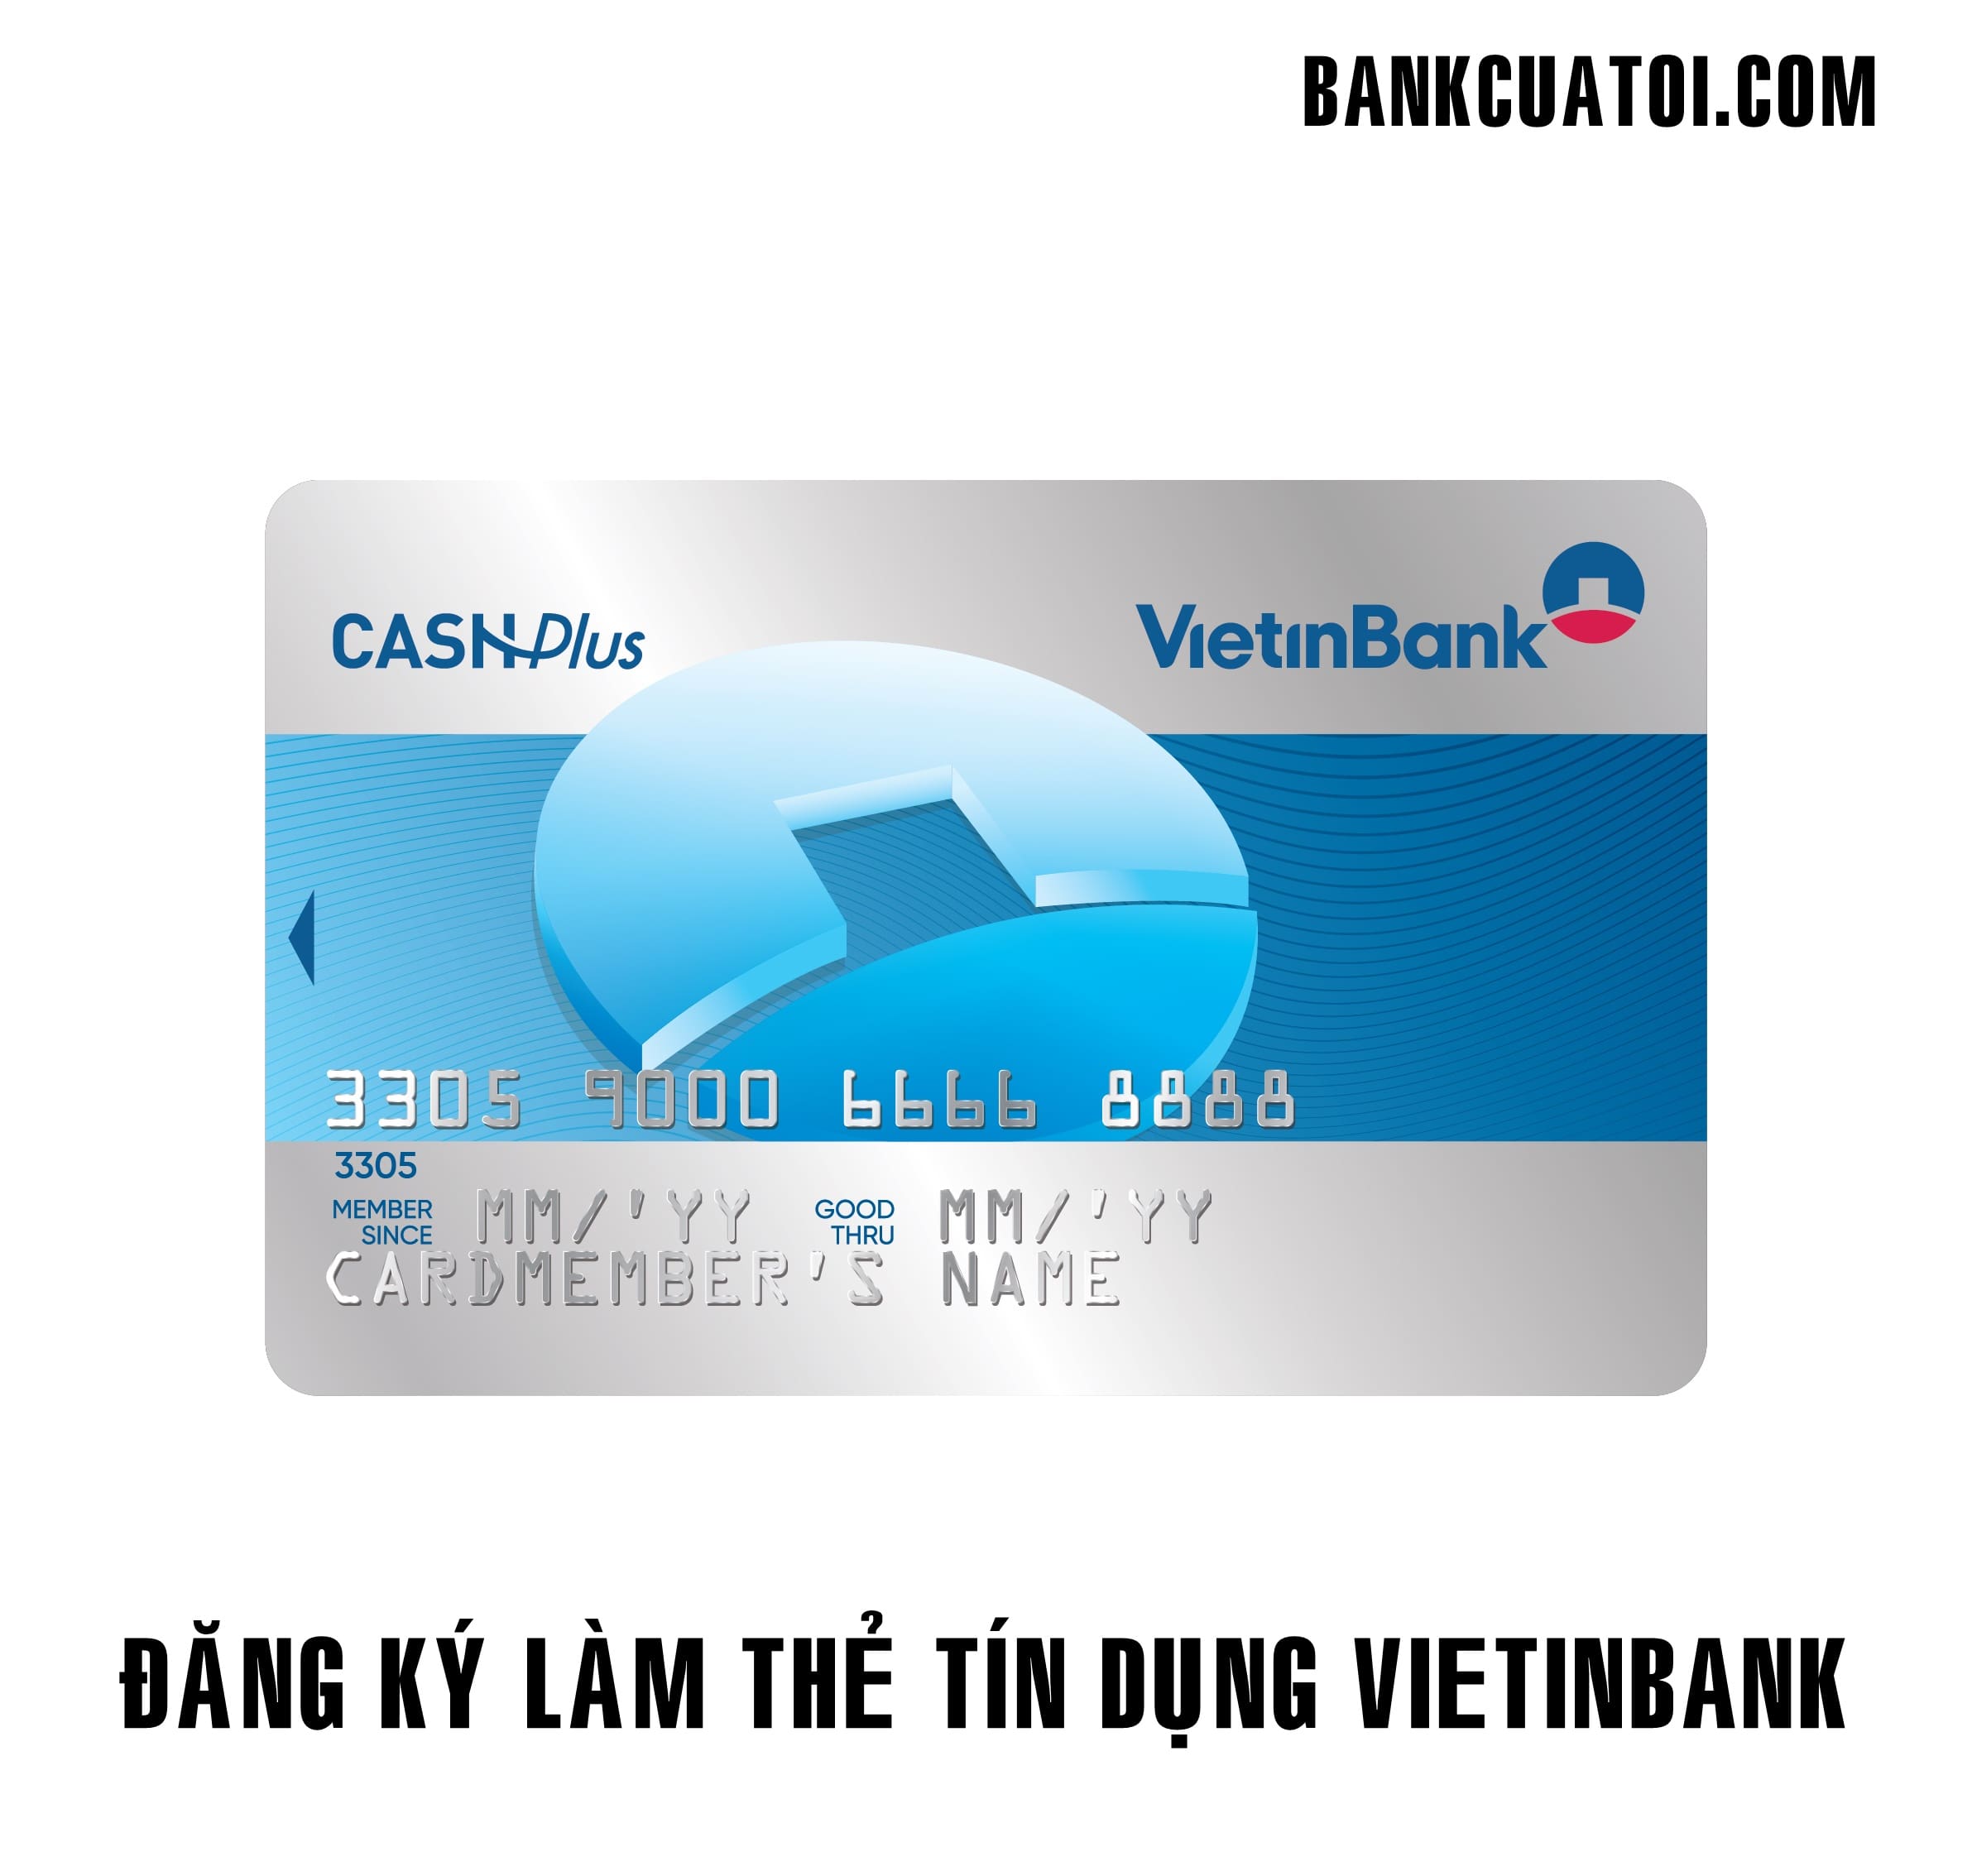 Lam the tin dung vietinbank